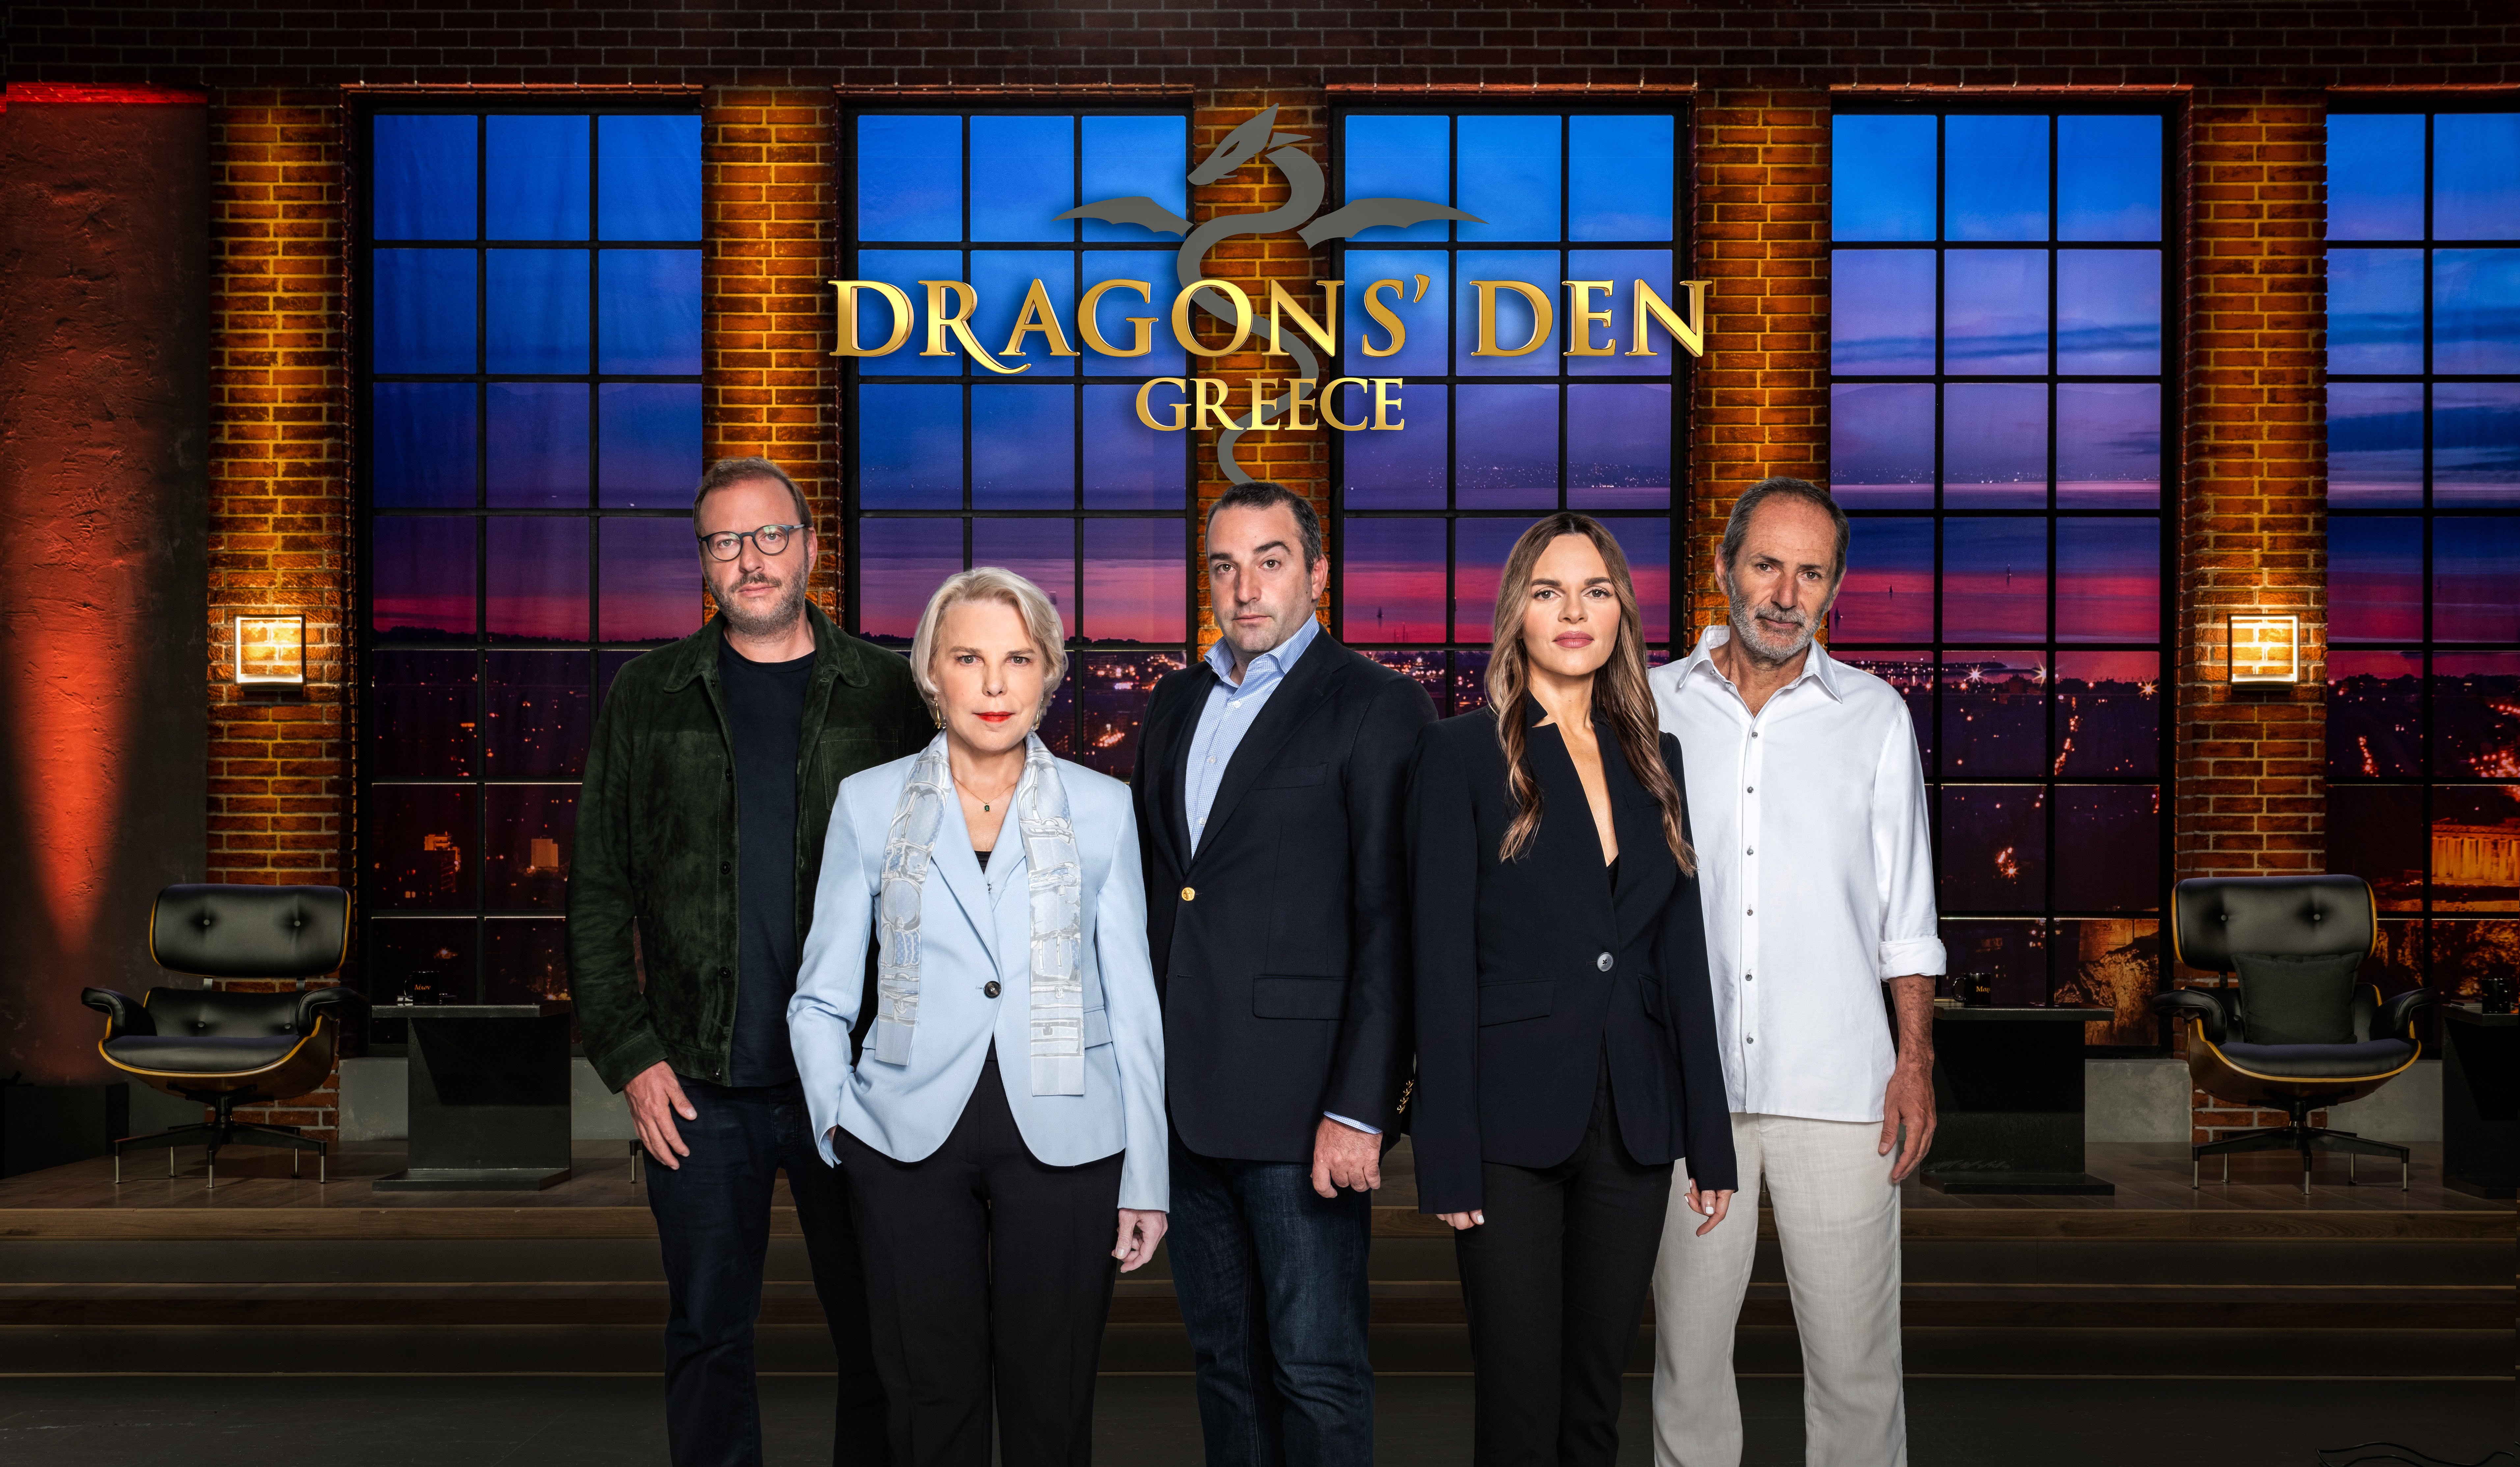 Το “Dragon’s Den”, το πιο επιτυχημένο show επενδύσεων και επιχειρηματικότητας, έρχεται στον ΑΝΤ1 την Παρασκευή 27 Ιανουαρίου